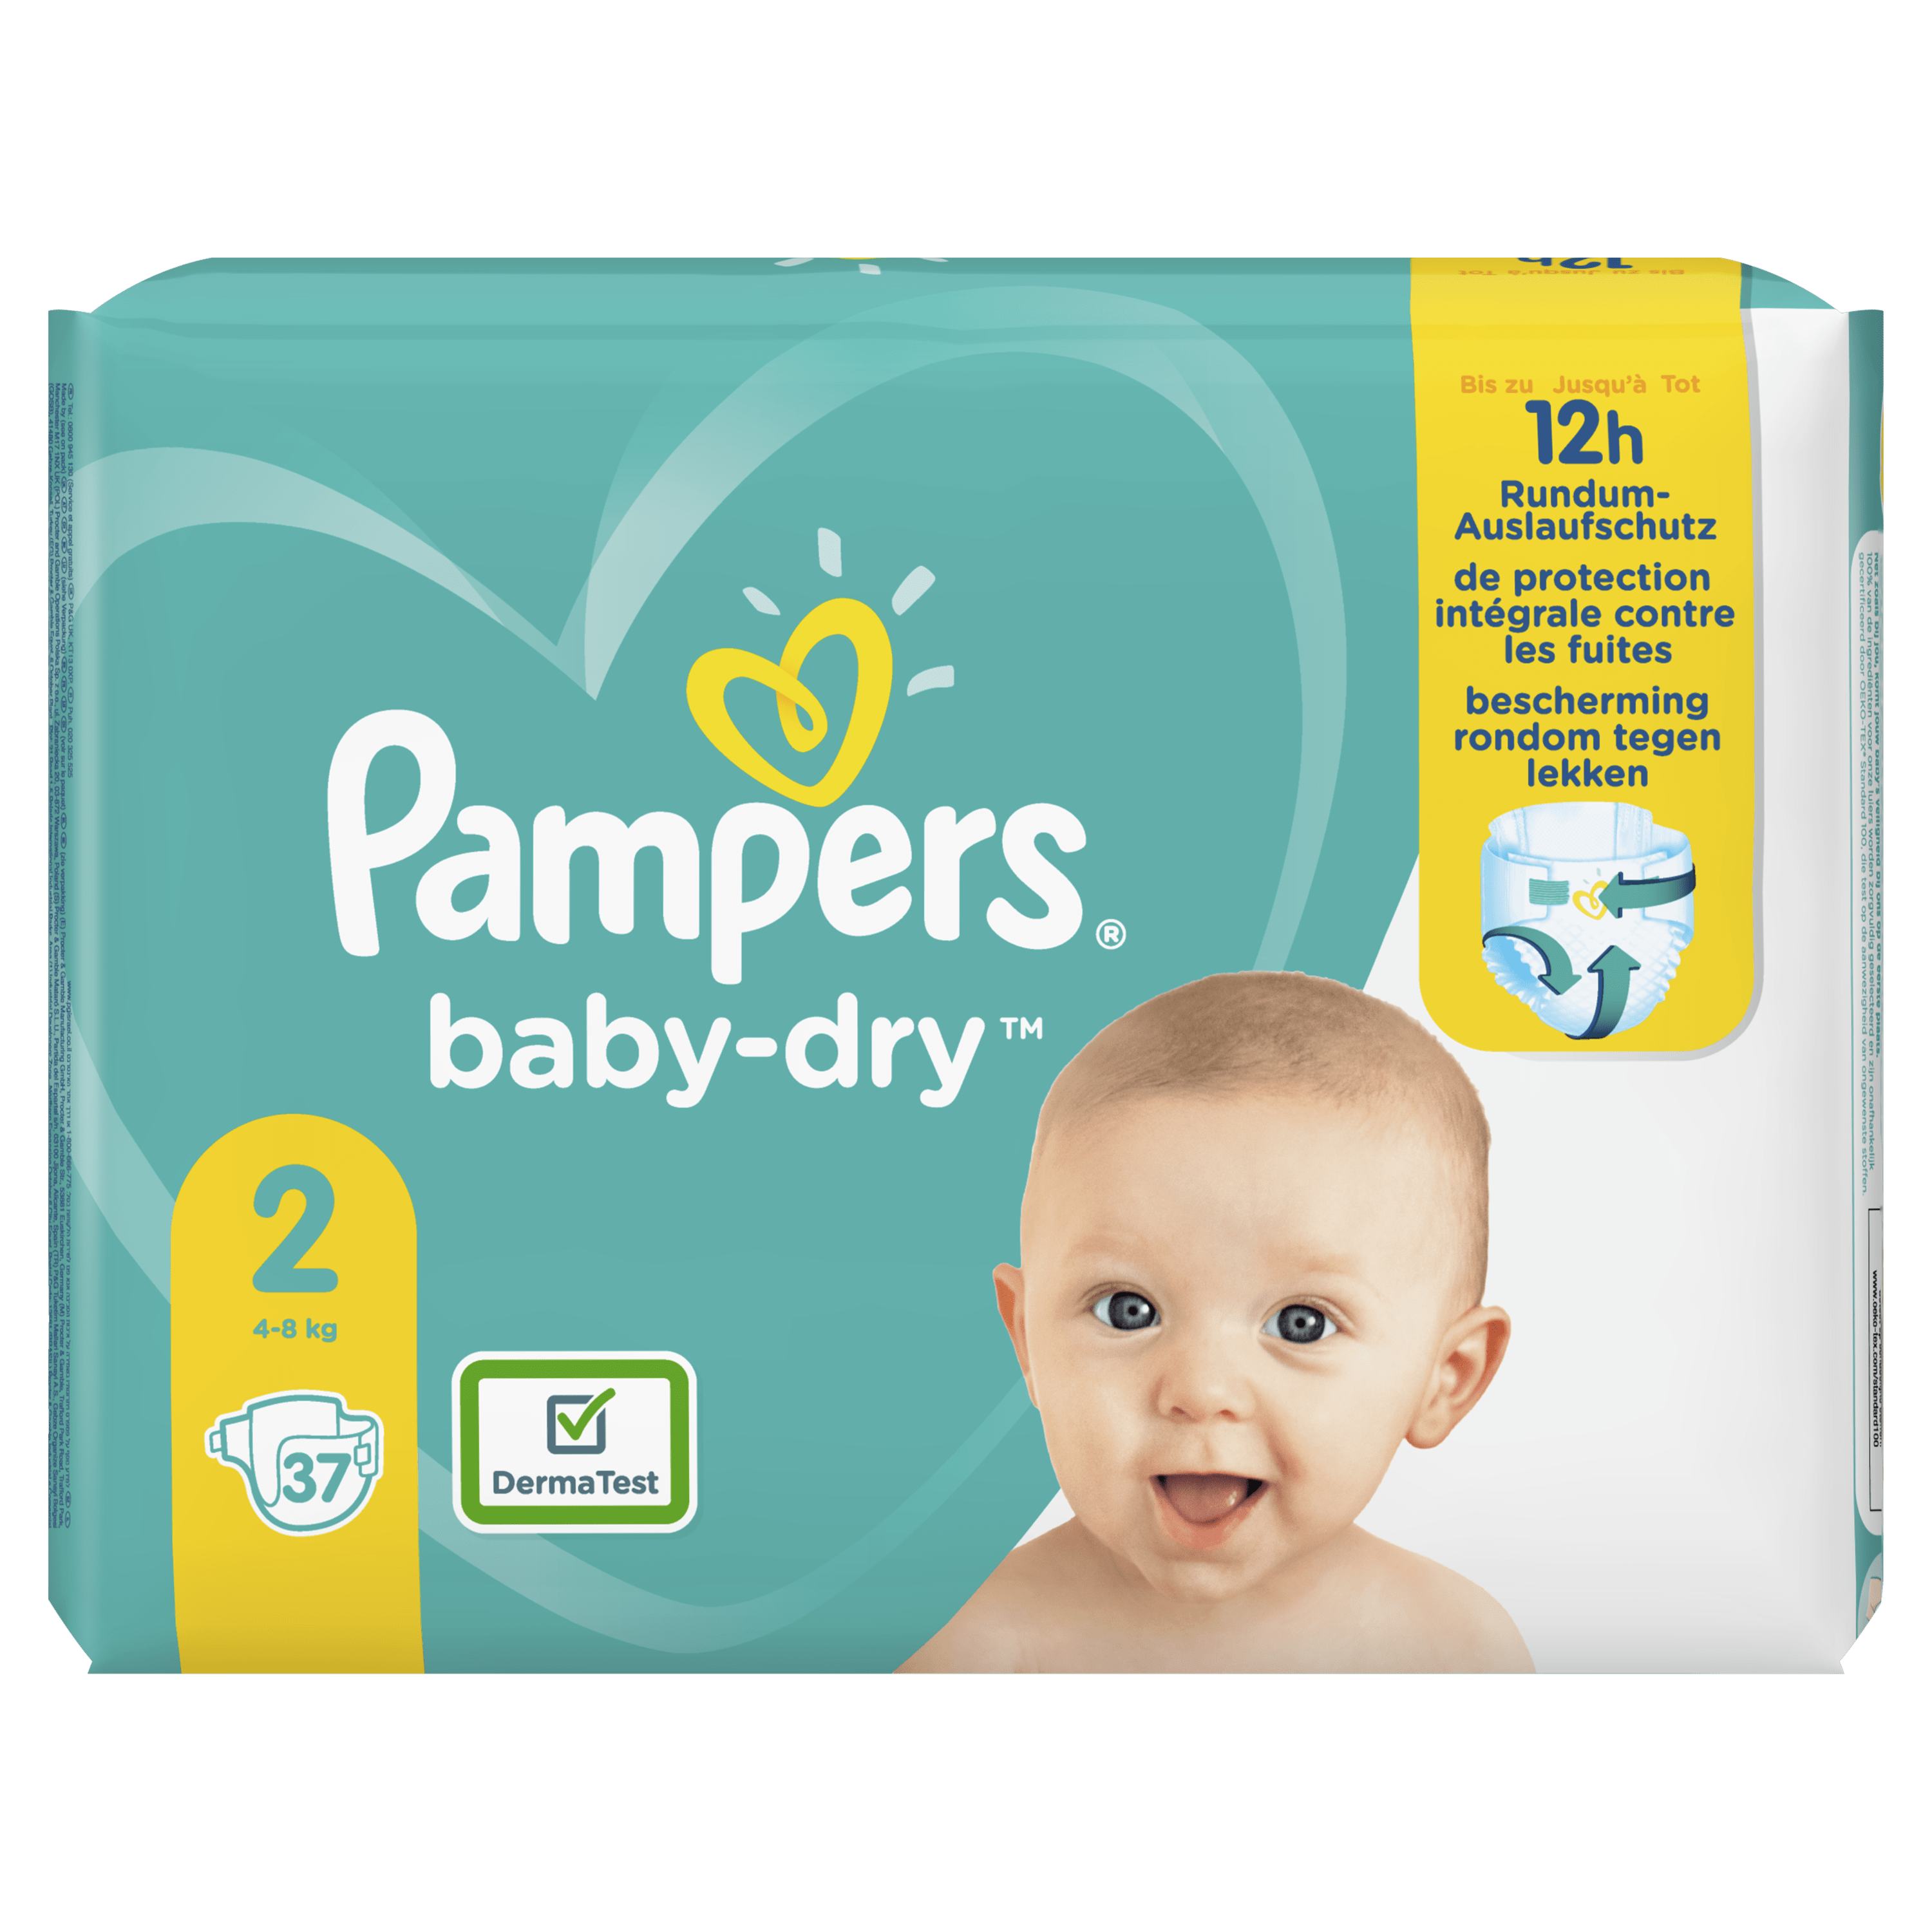 Pampers Baby-Dry Maat 2, 37 Luiers, Tot 12 Uur Bescherming, 4-8kg wit